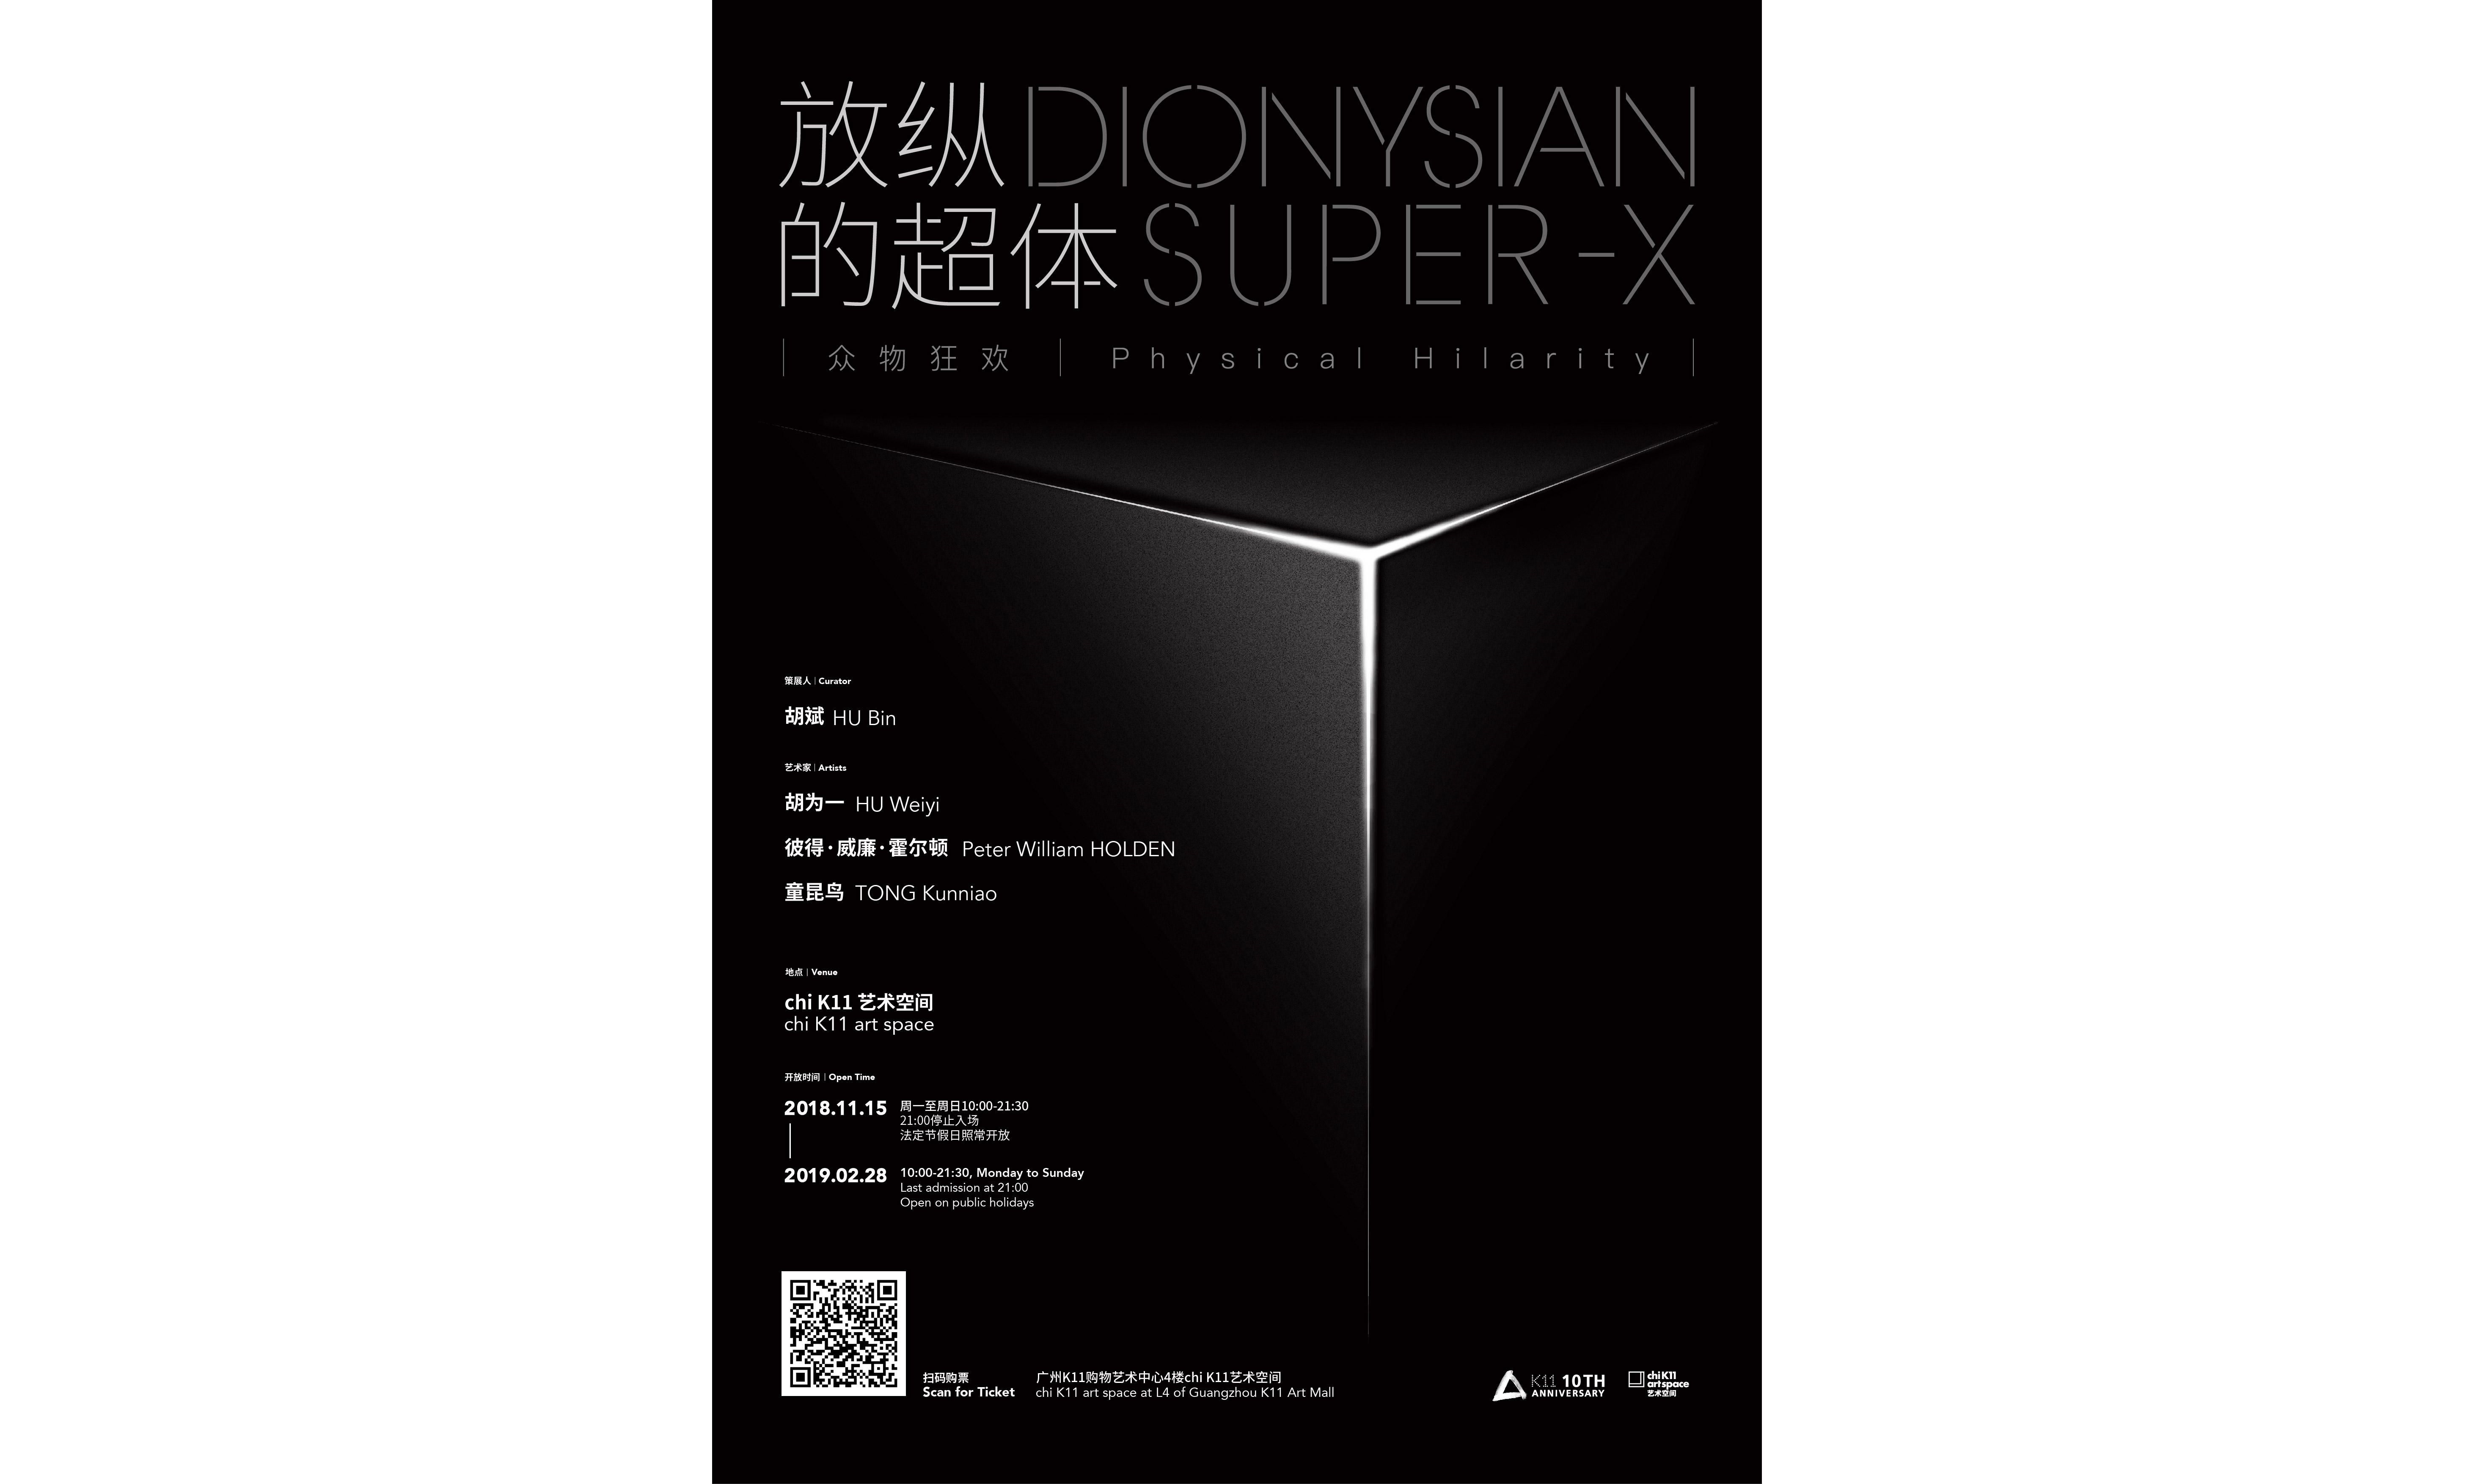 年末最 IN 展览！广州 K11 即将变身 “巨型超体”